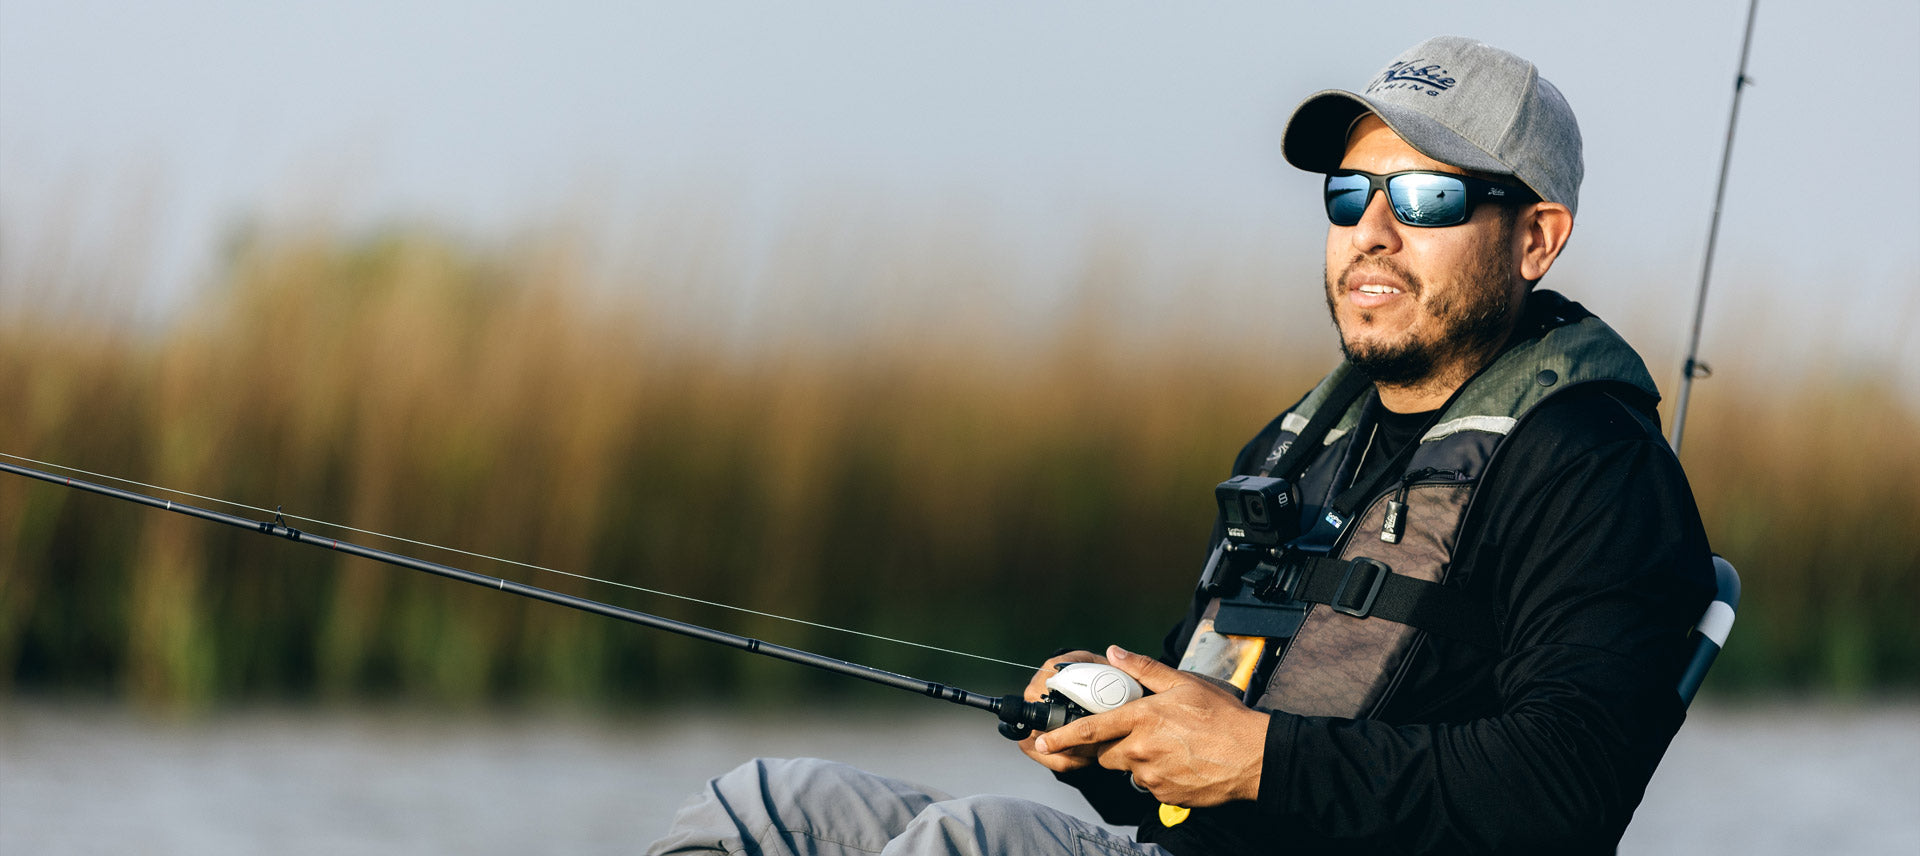 Angler fishing with Hobie Eyewear Mojo Polarized Sunglasses and Hobie hat.